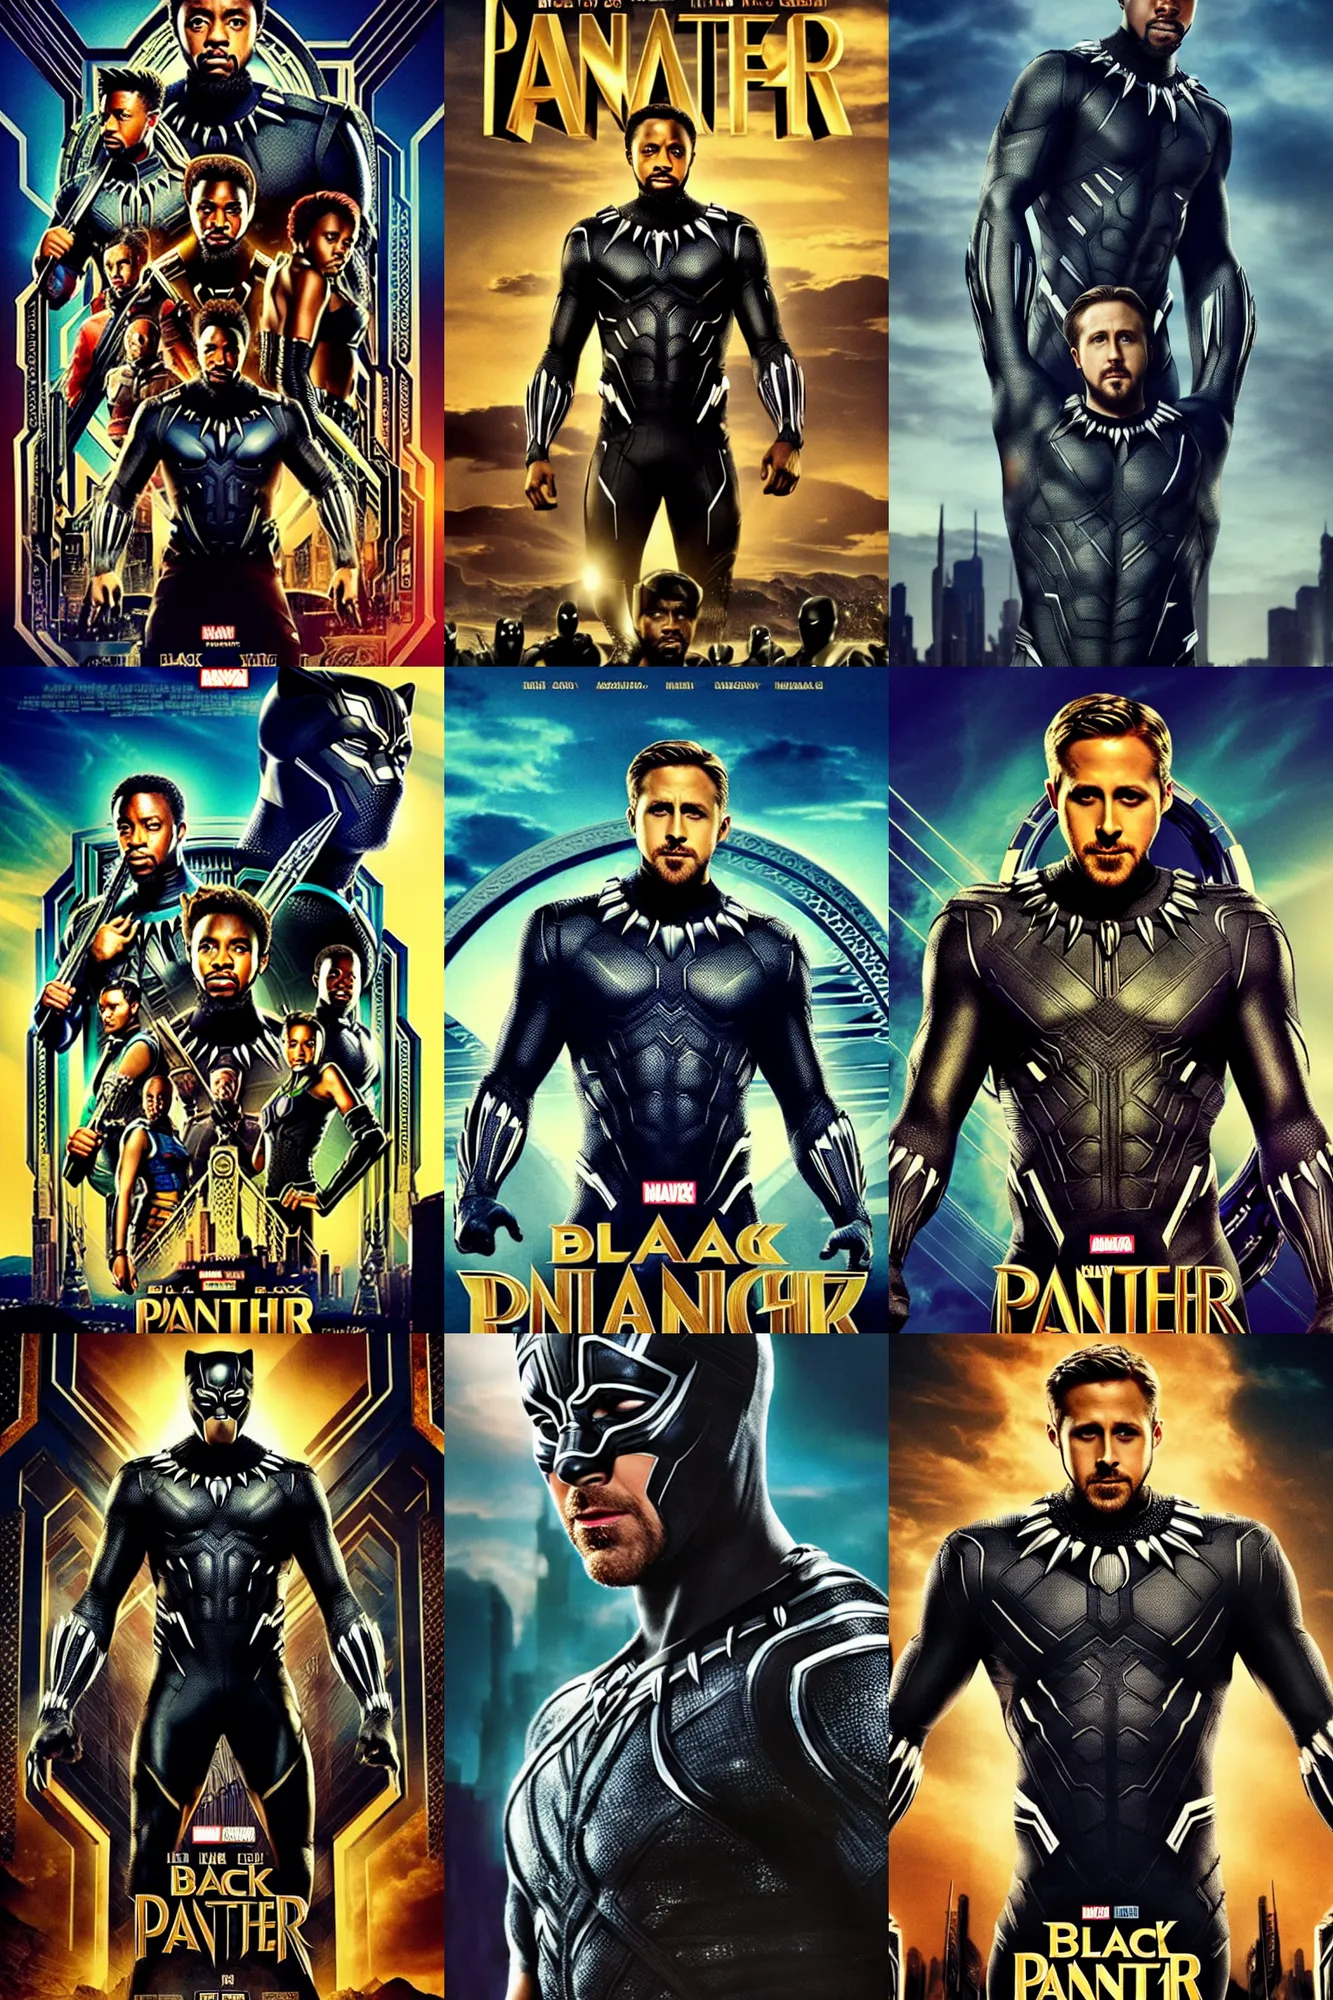 Prompt: poster of Ryan Gosling as Black Panther, movie awards, heroic pose photo, dramatic lighting